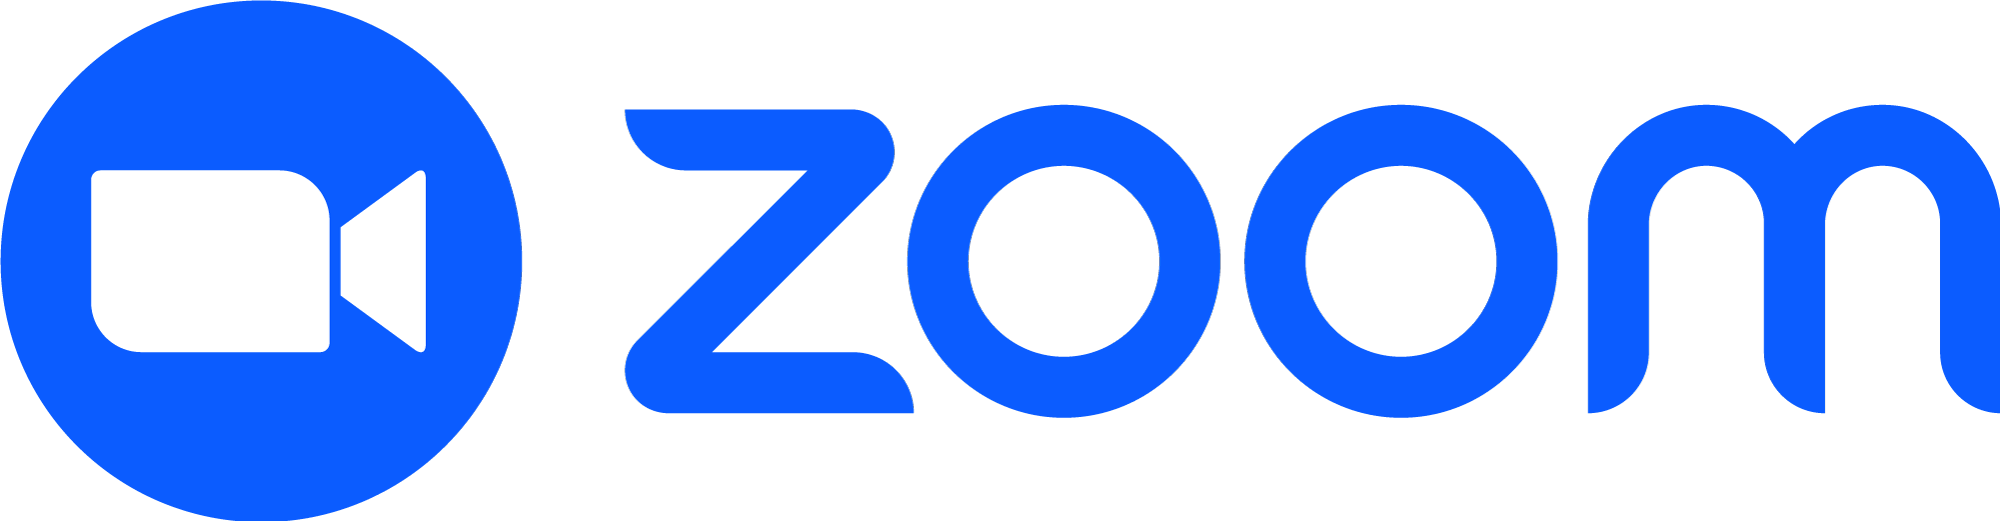 zoom logo png | Contact Us | Keringa-Petwings